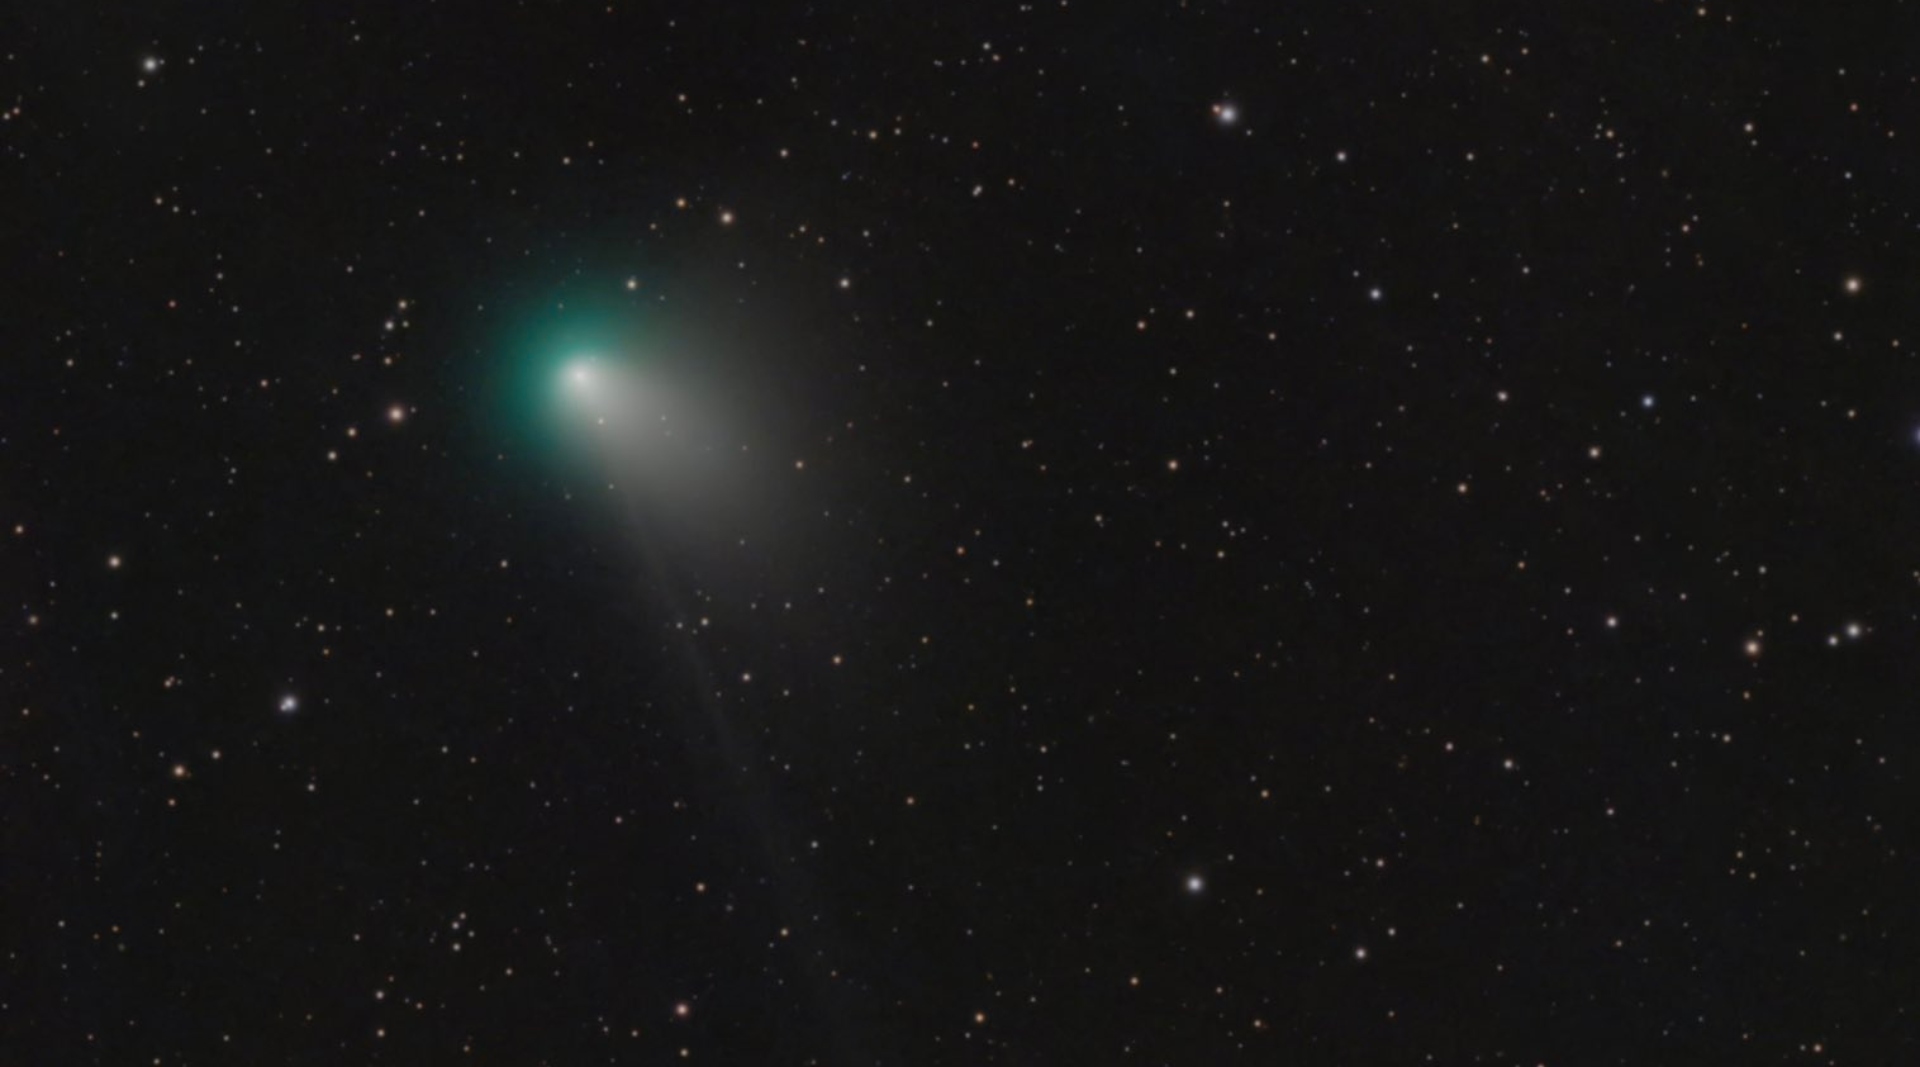 Un brillante cometa fue fotografiado por especialistas en la materia desde los primeros días del 2023 (Twitter/@brennanmgilmore)